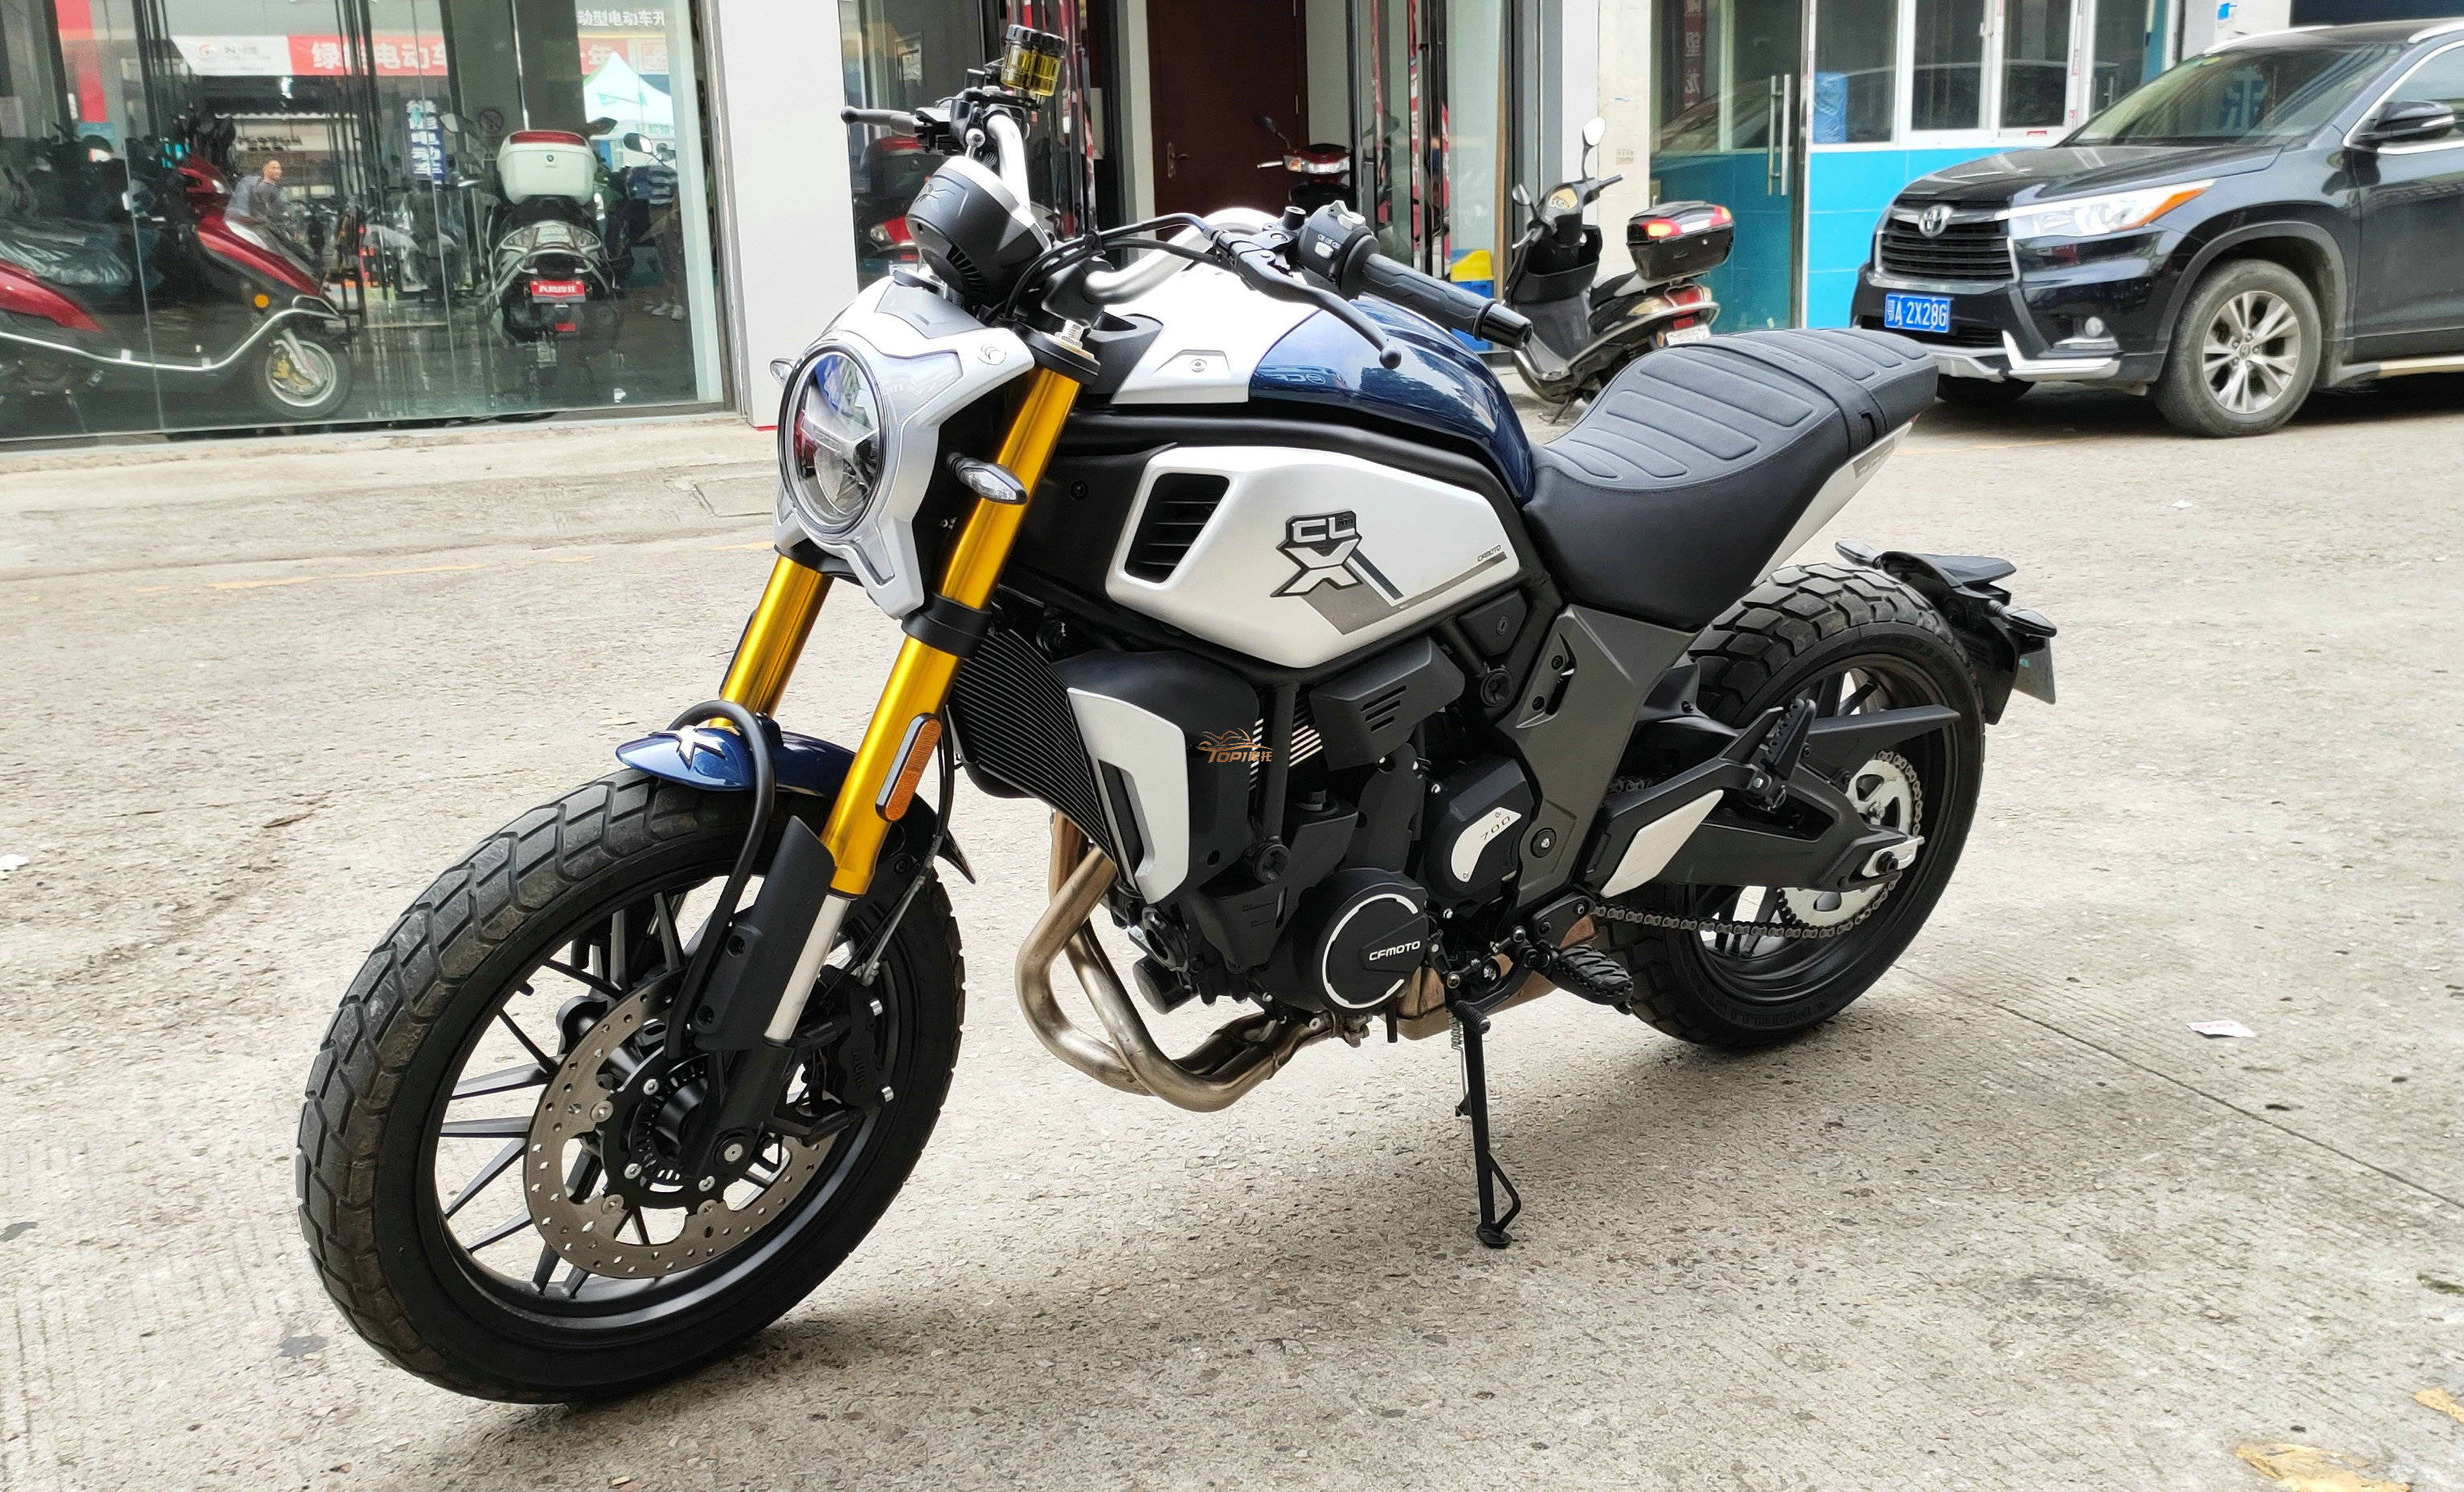 摩瑞摩托车,MV800报价及图片-哈罗摩托车官网